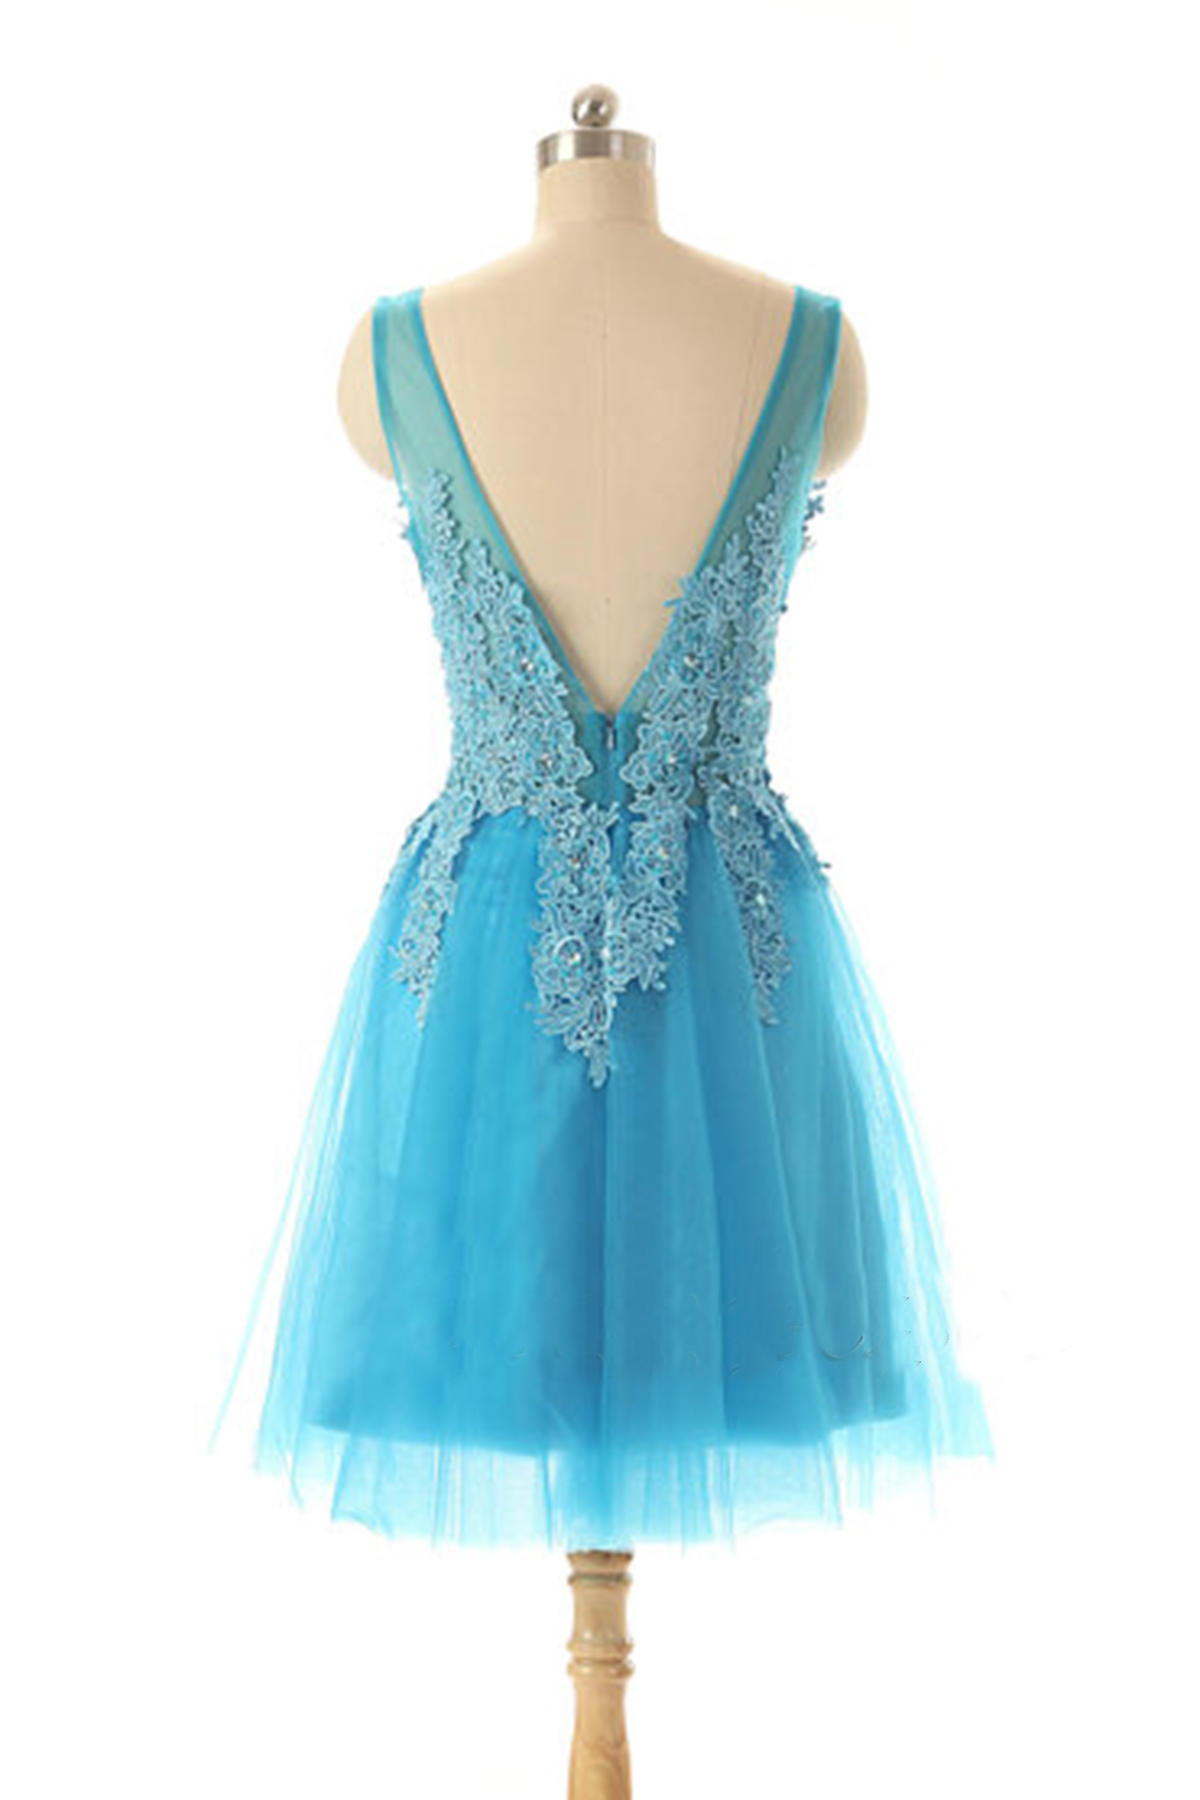 Blue Prom Dress, Short Prom Dress, Lace Prom Dress, Cheap Prom Dress